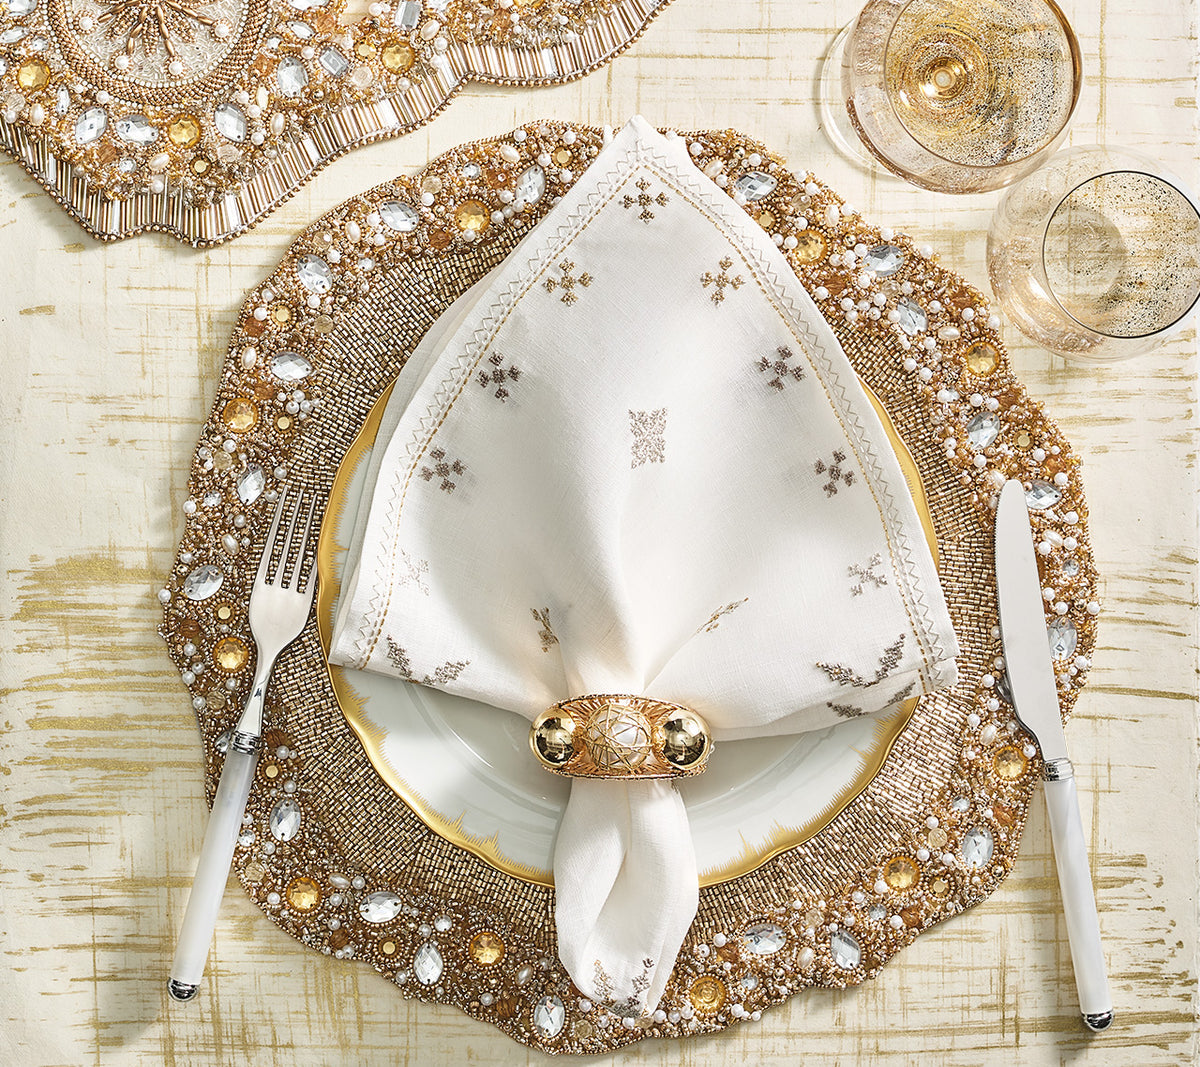 Kim Seybert Luxury Ornate Table Runner in Champagne & Crystal